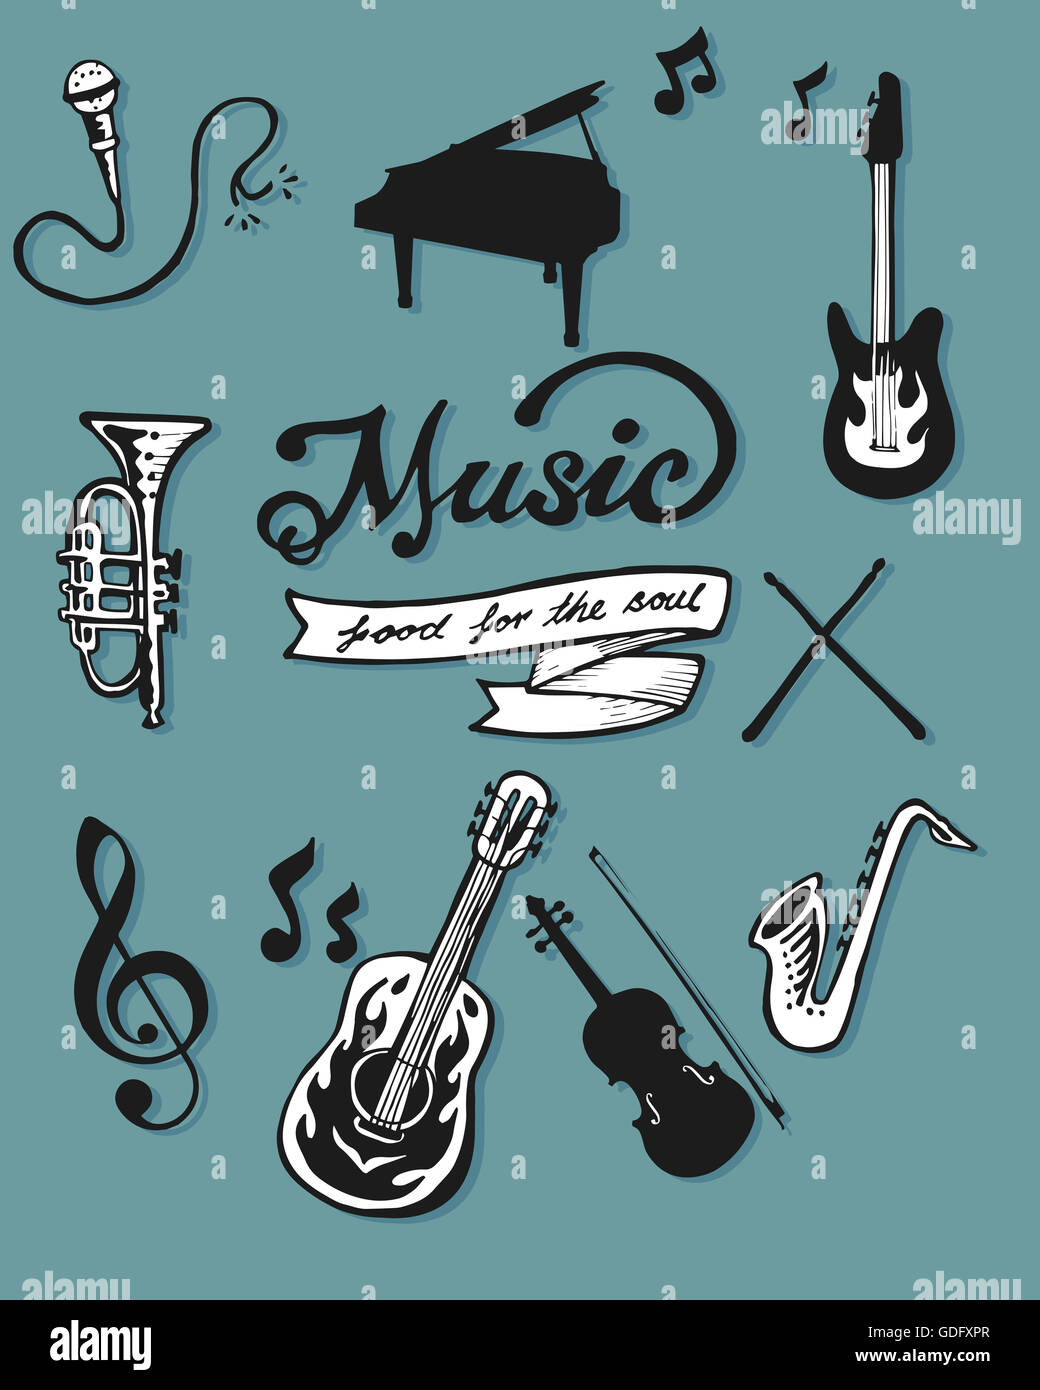 Handgezeichnete Illustrationen oder Zeichnung von verschiedenen Musikinstrumenten Stockfoto